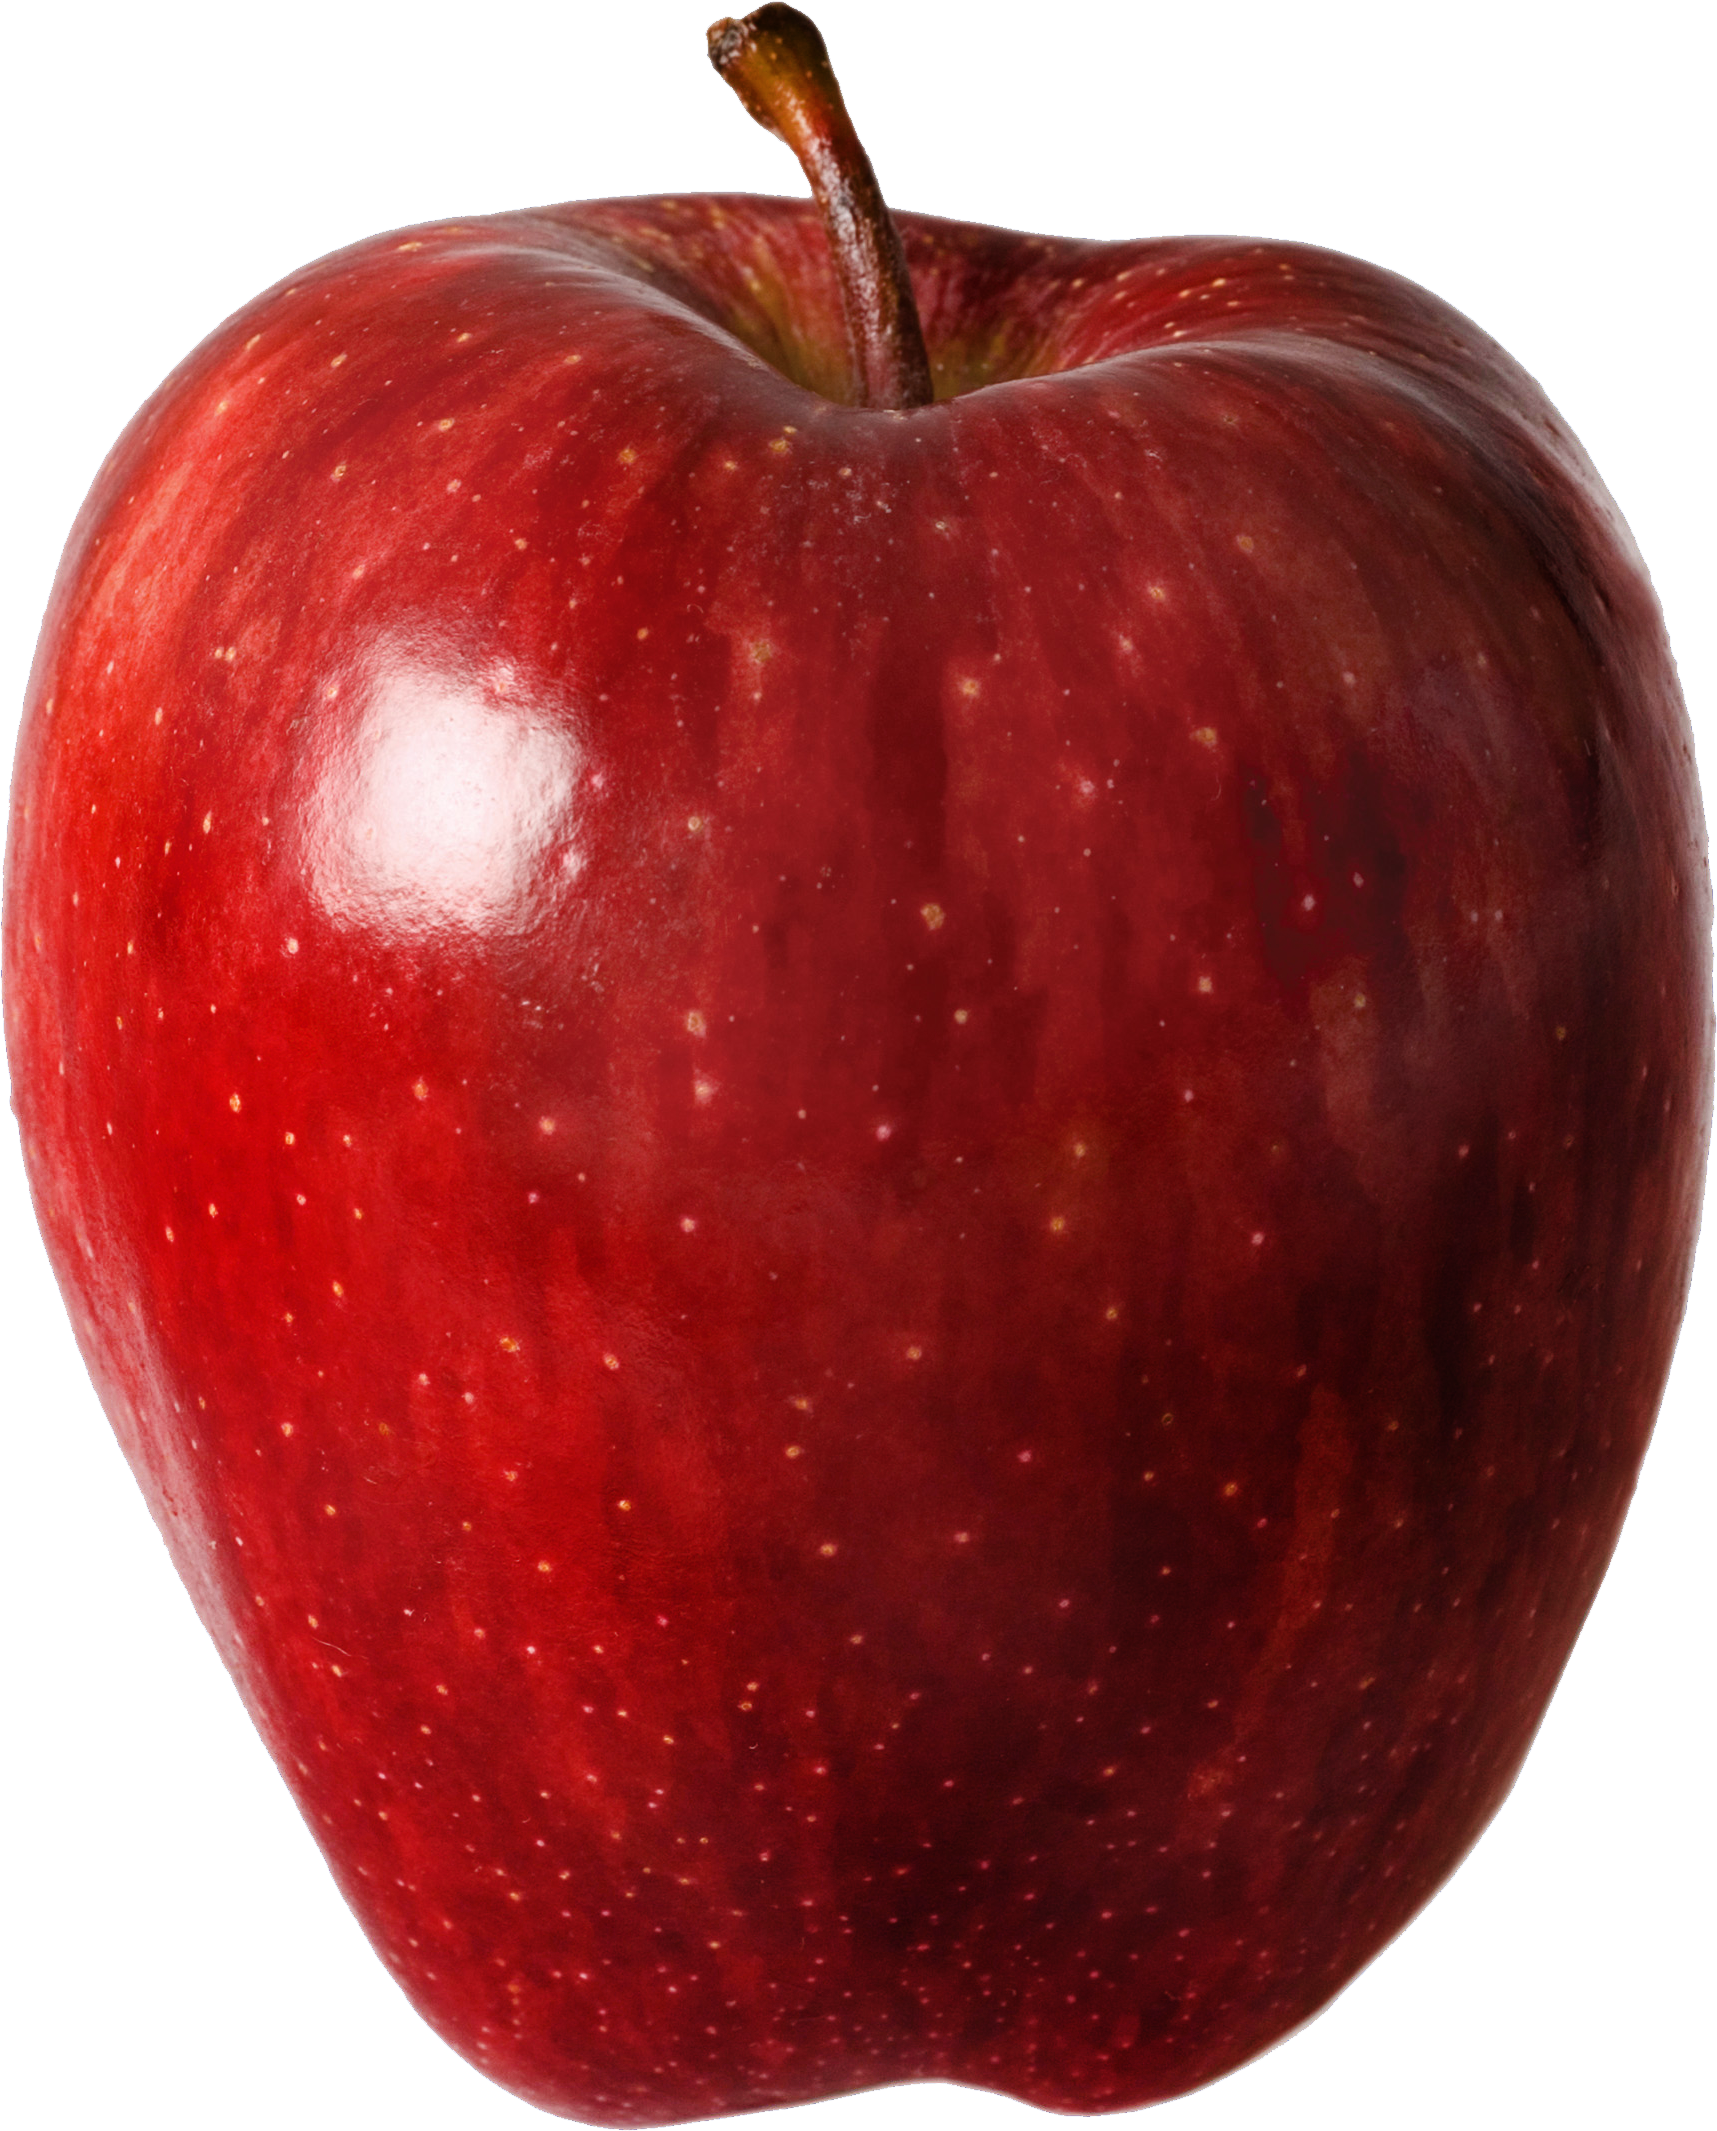 Immagine di PNG della frutta di Apple